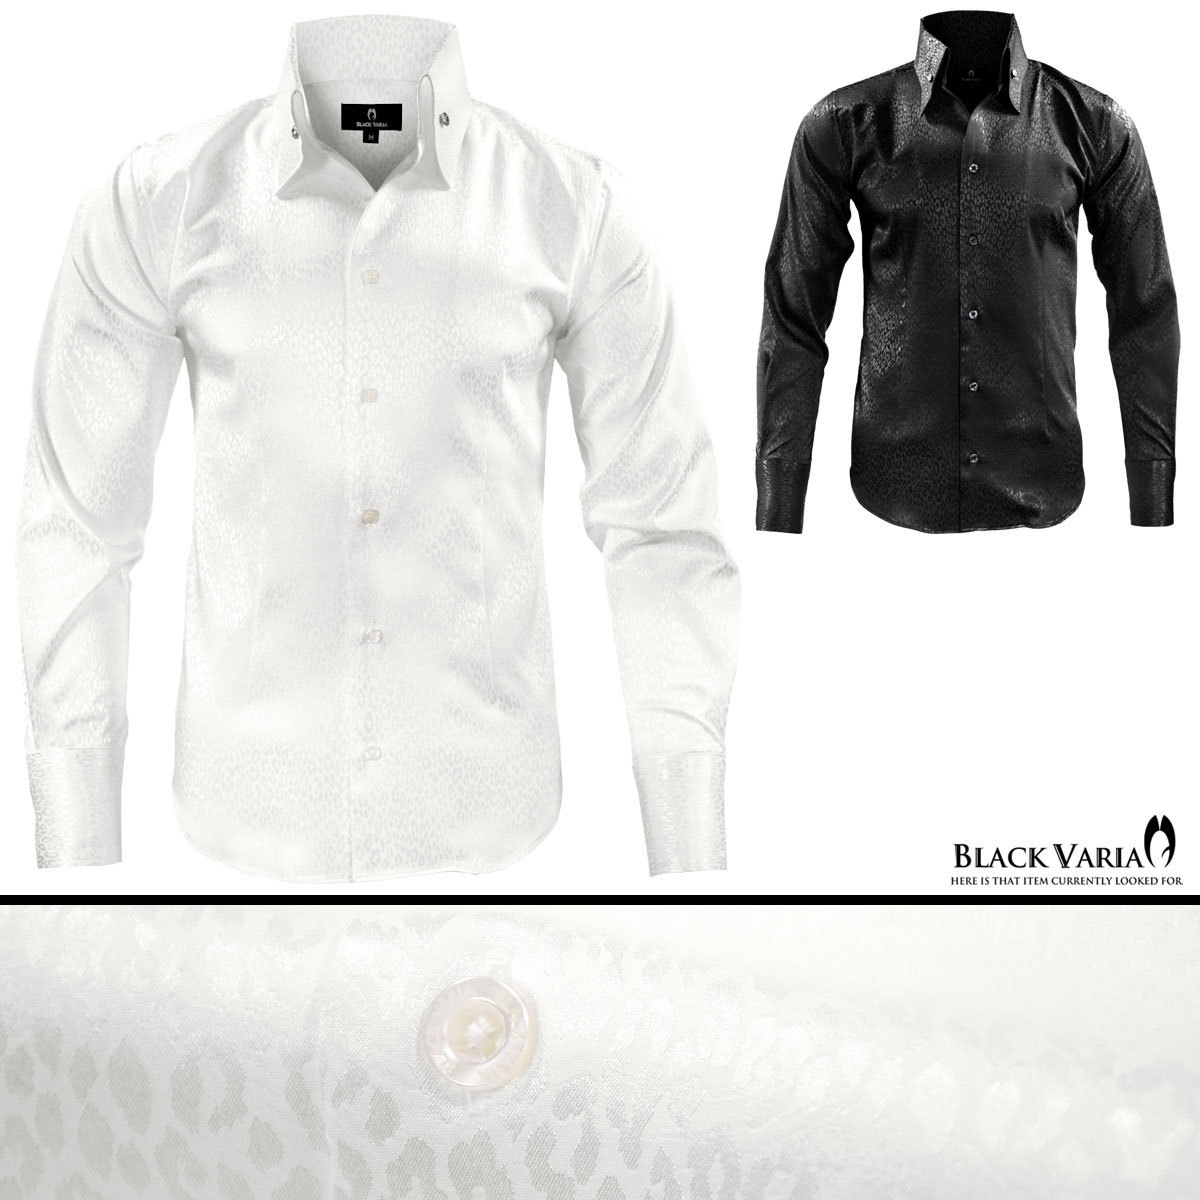 191853-wh BLACK VARIA ヒョウ豹 レオパード柄 スキッパー クリスタルボタン ドレスシャツ メンズ(ホワイト白) L パーティー ステージ衣装_画像4